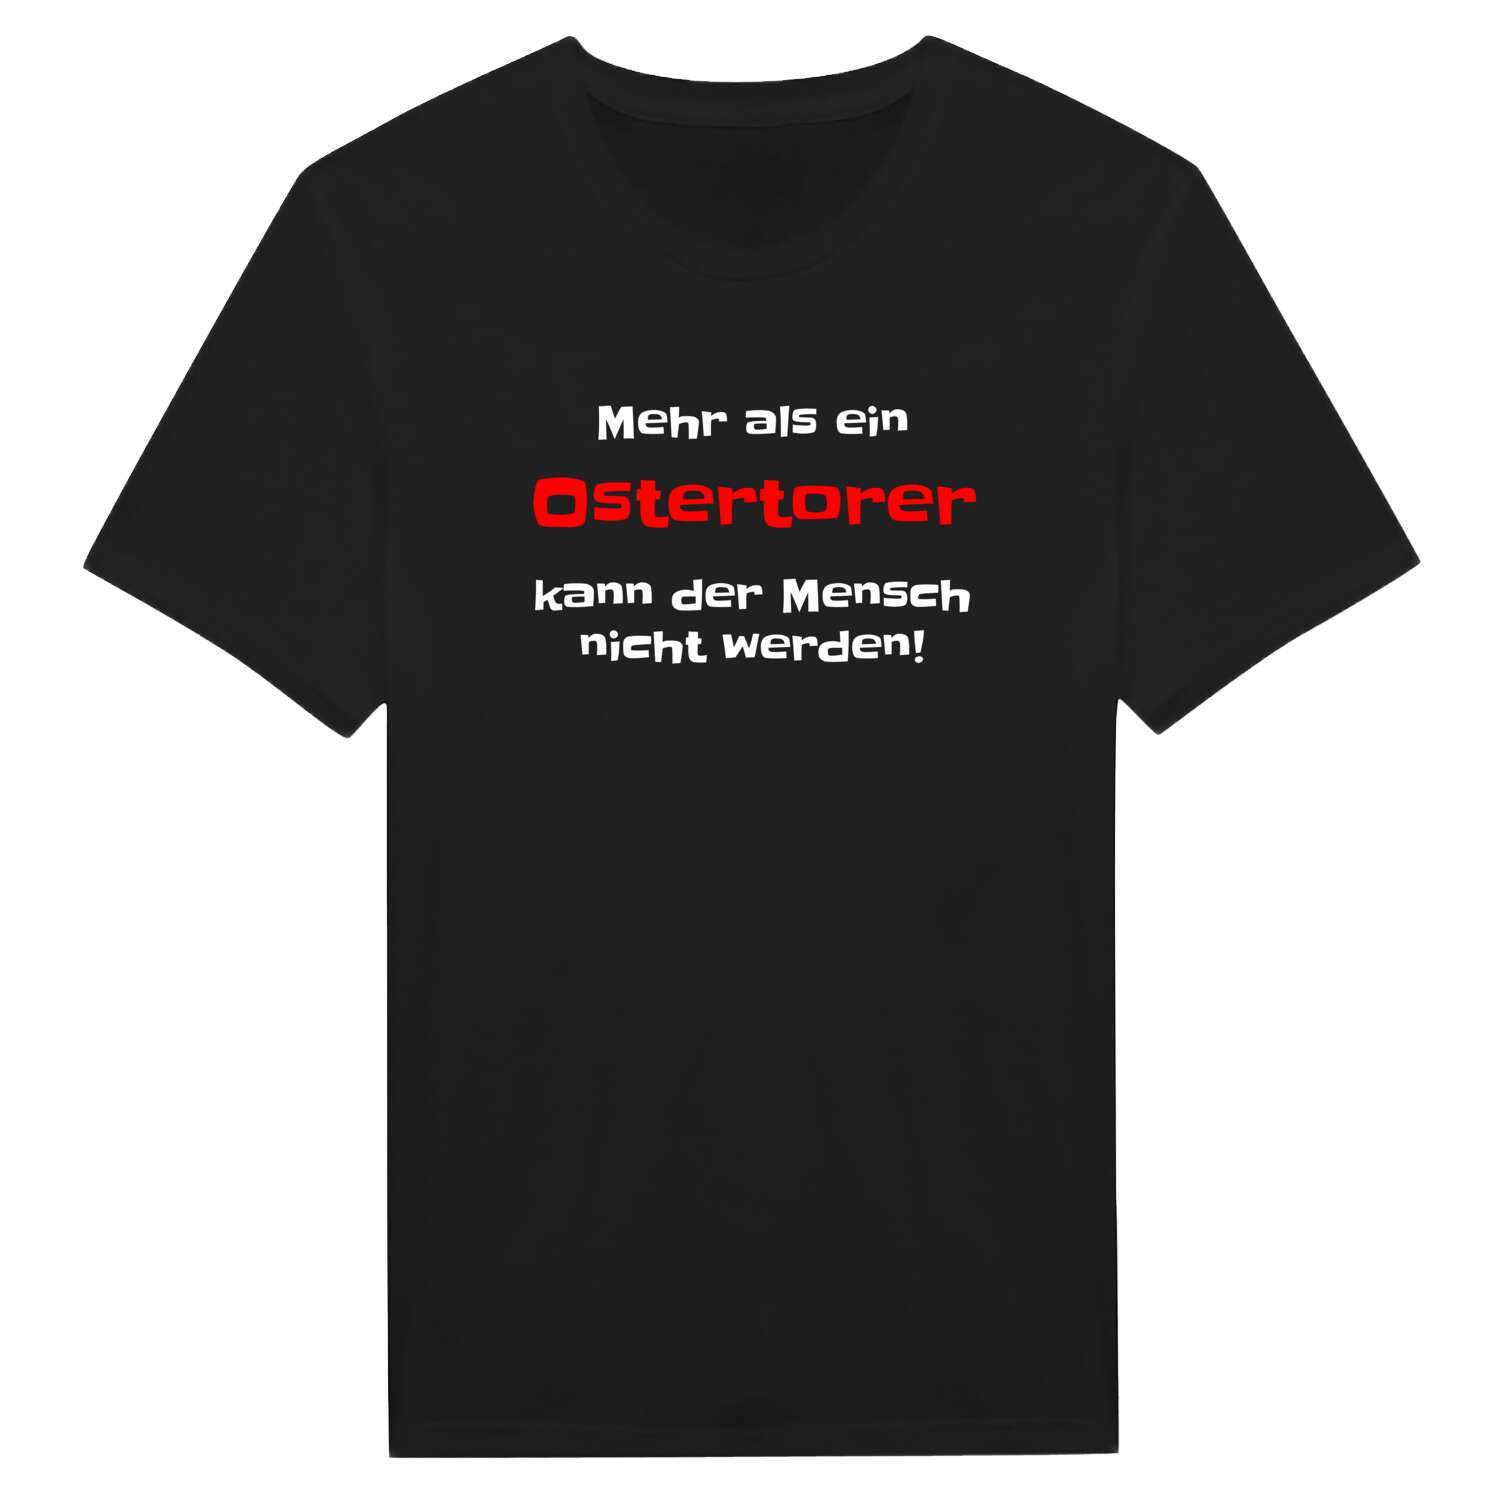 Ostertor T-Shirt »Mehr als ein«